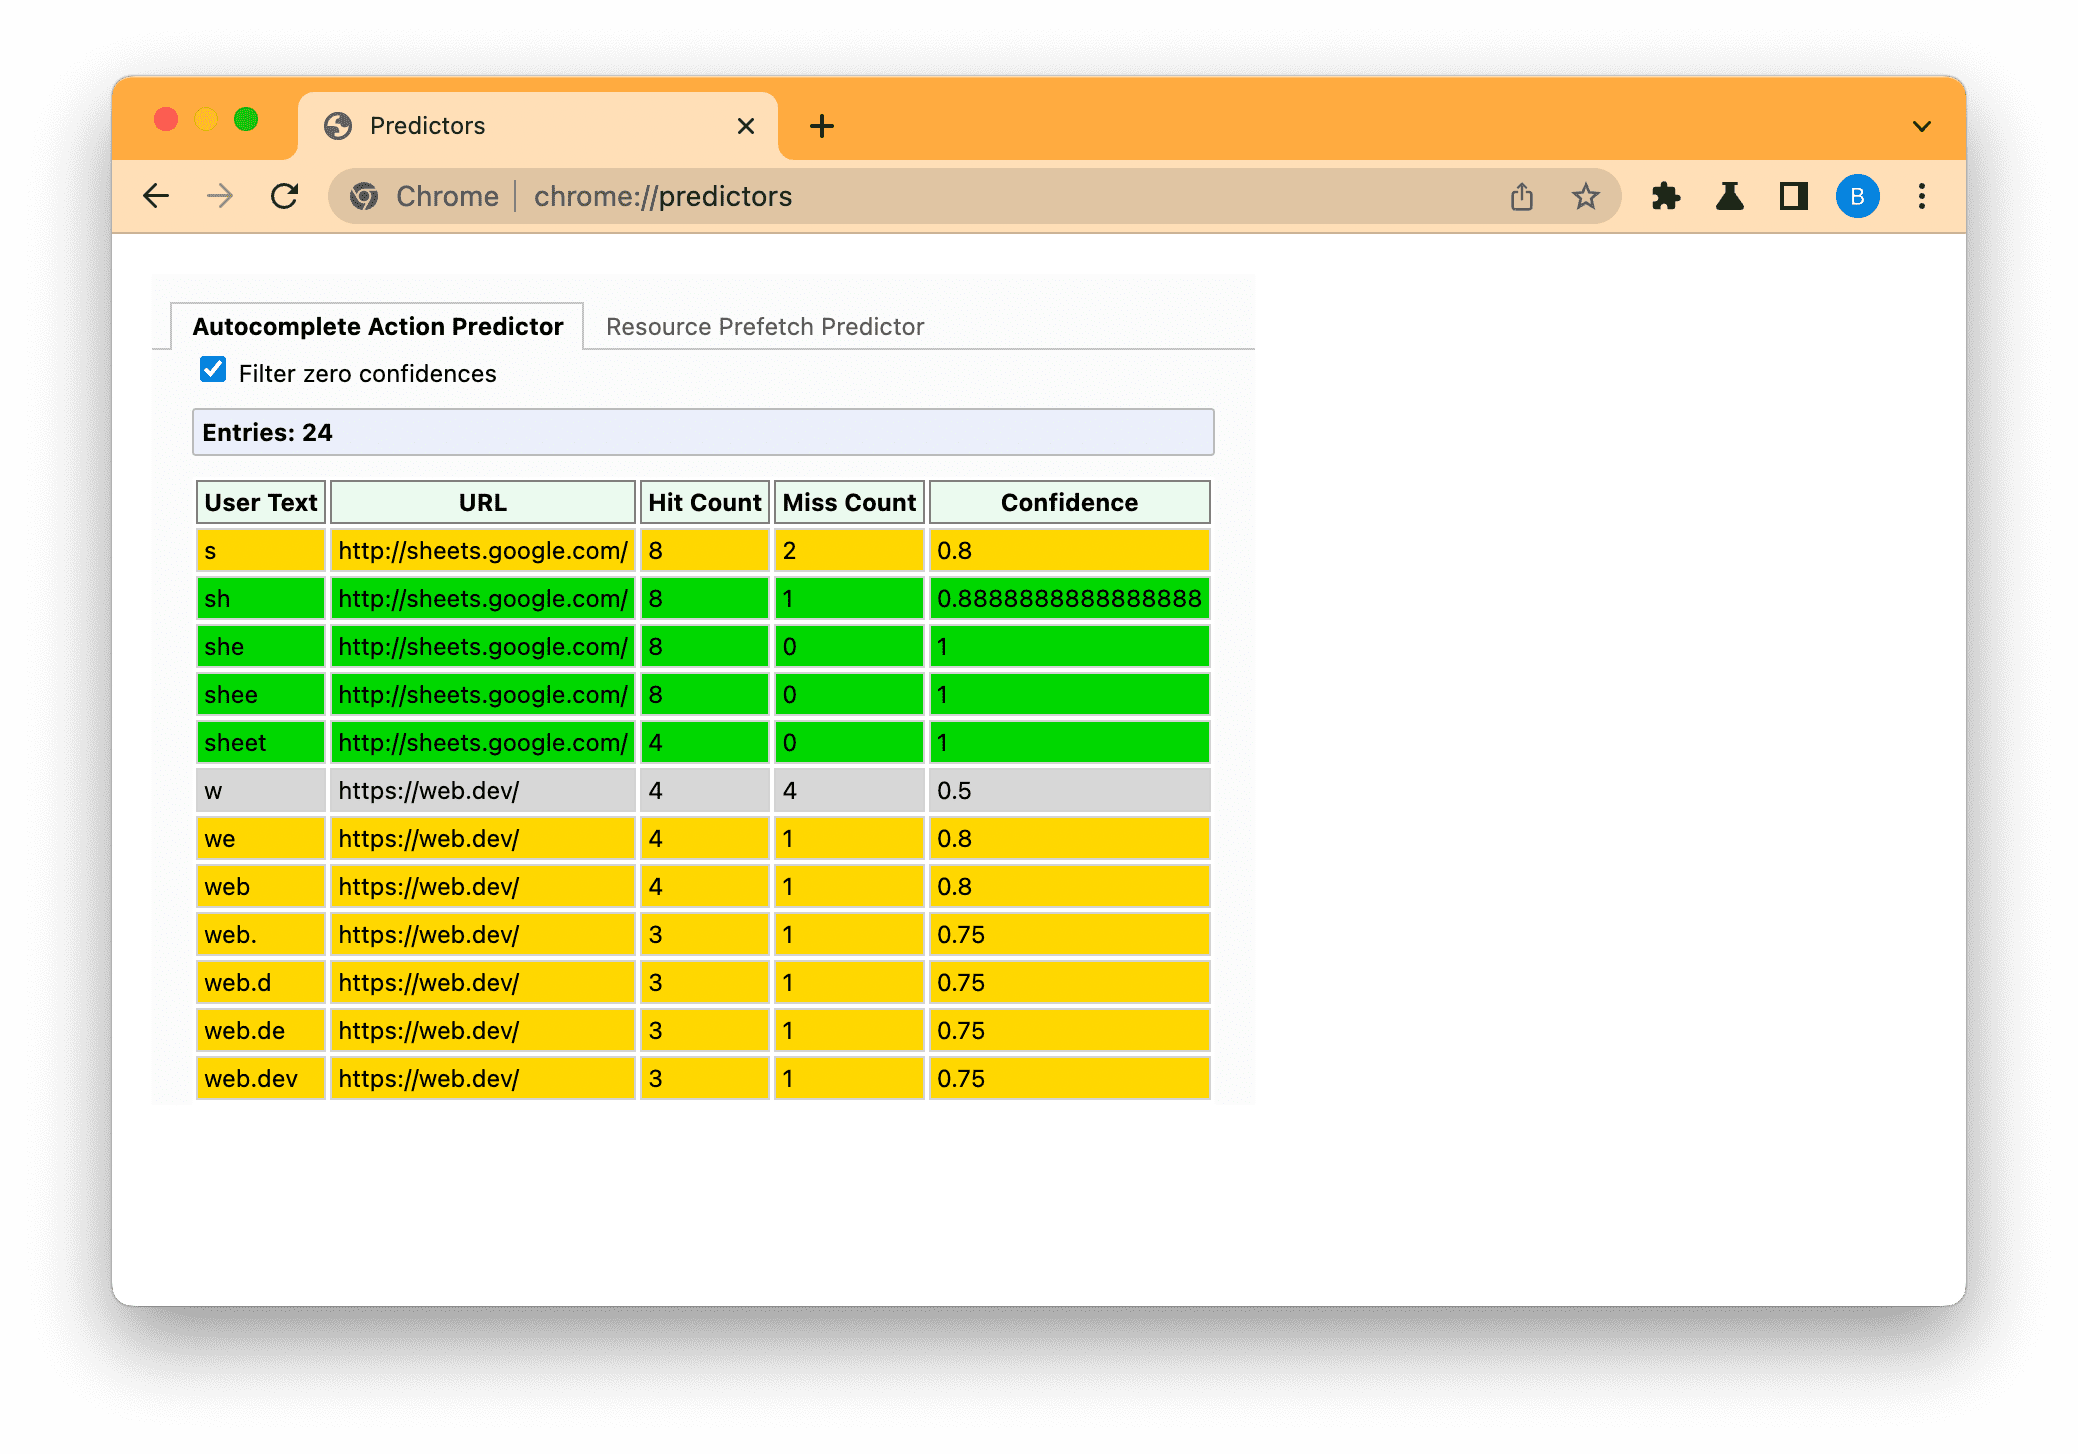 Strona Prognoz Chrome na podstawie wpisanego tekstu pokazuje prognozy niskie (szare), średnie (bursztynowe) i wysokie (zielone).